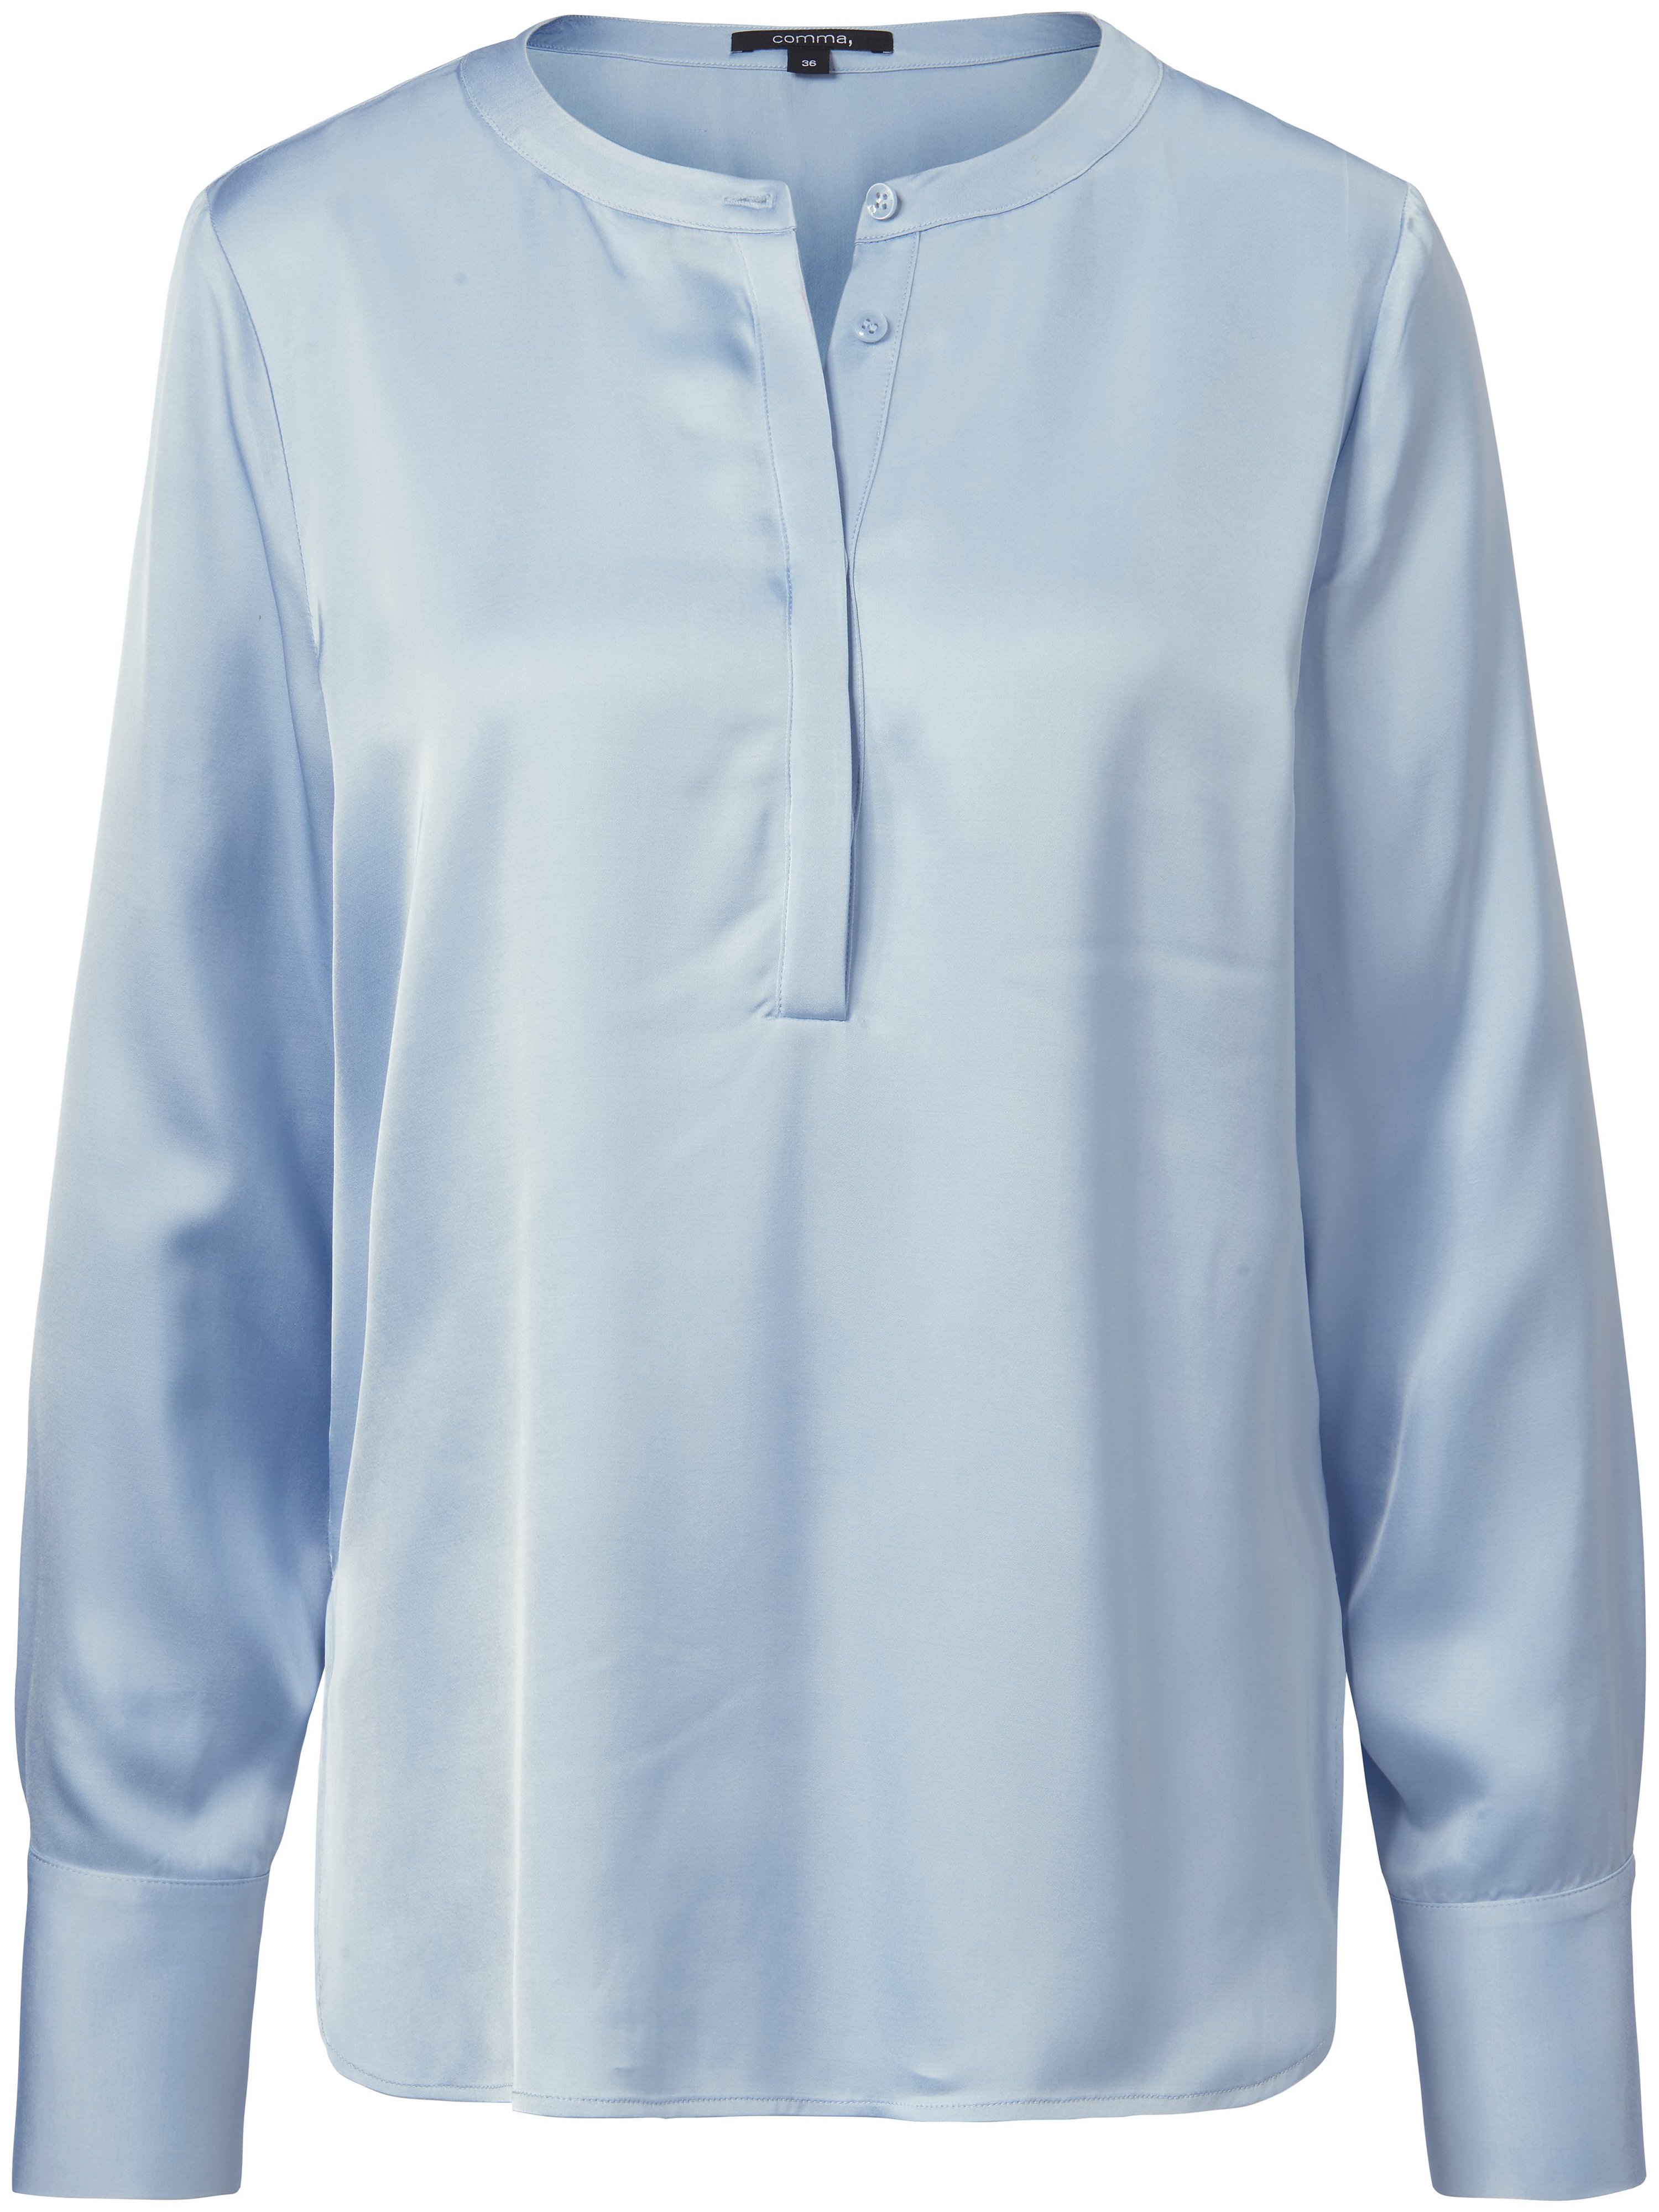 La blouse plus longue au dos 100% viscose  comma, bleu